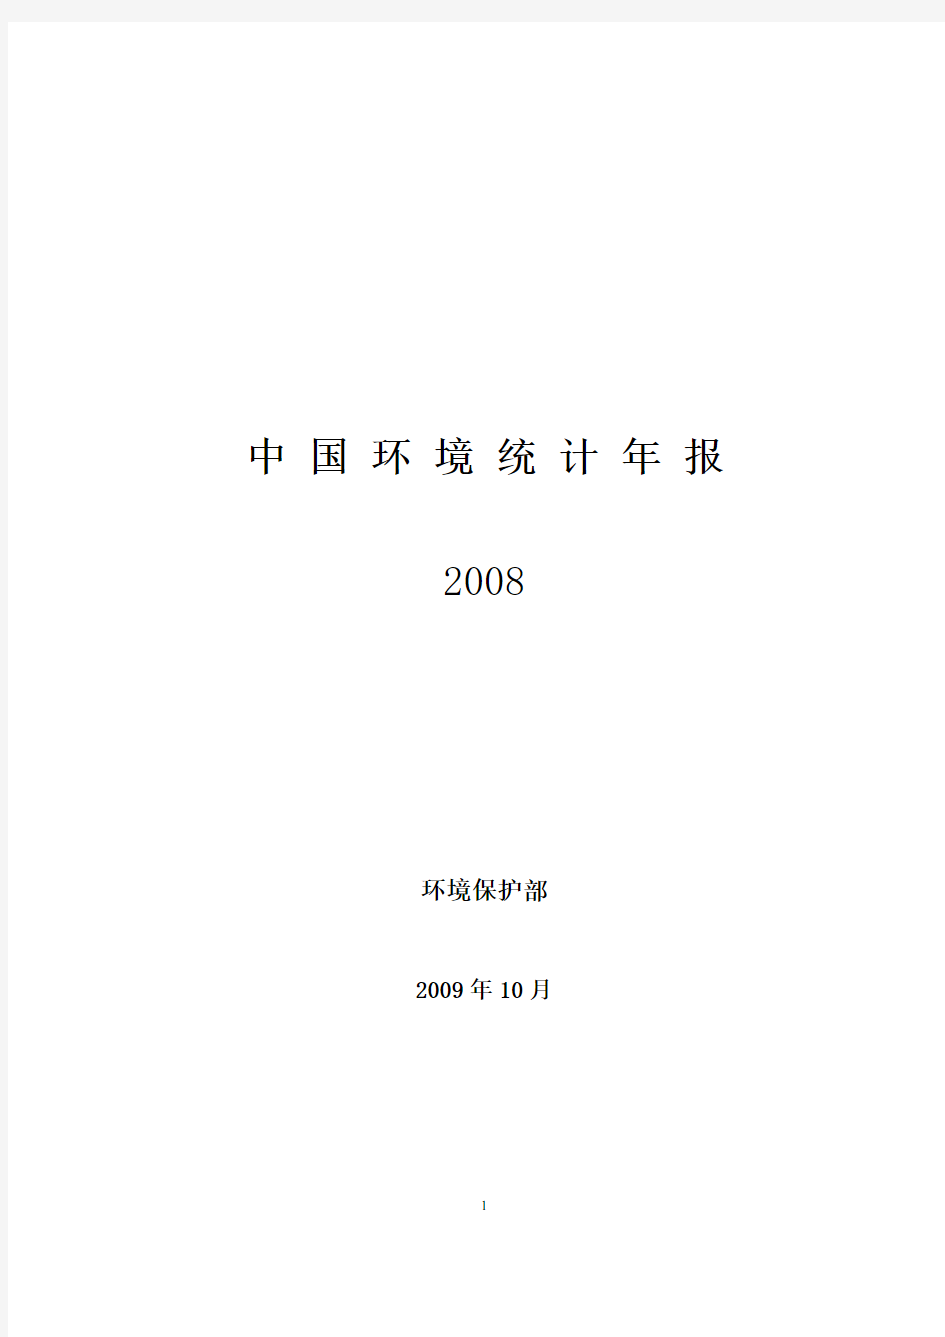 2008年中国环境统计年报